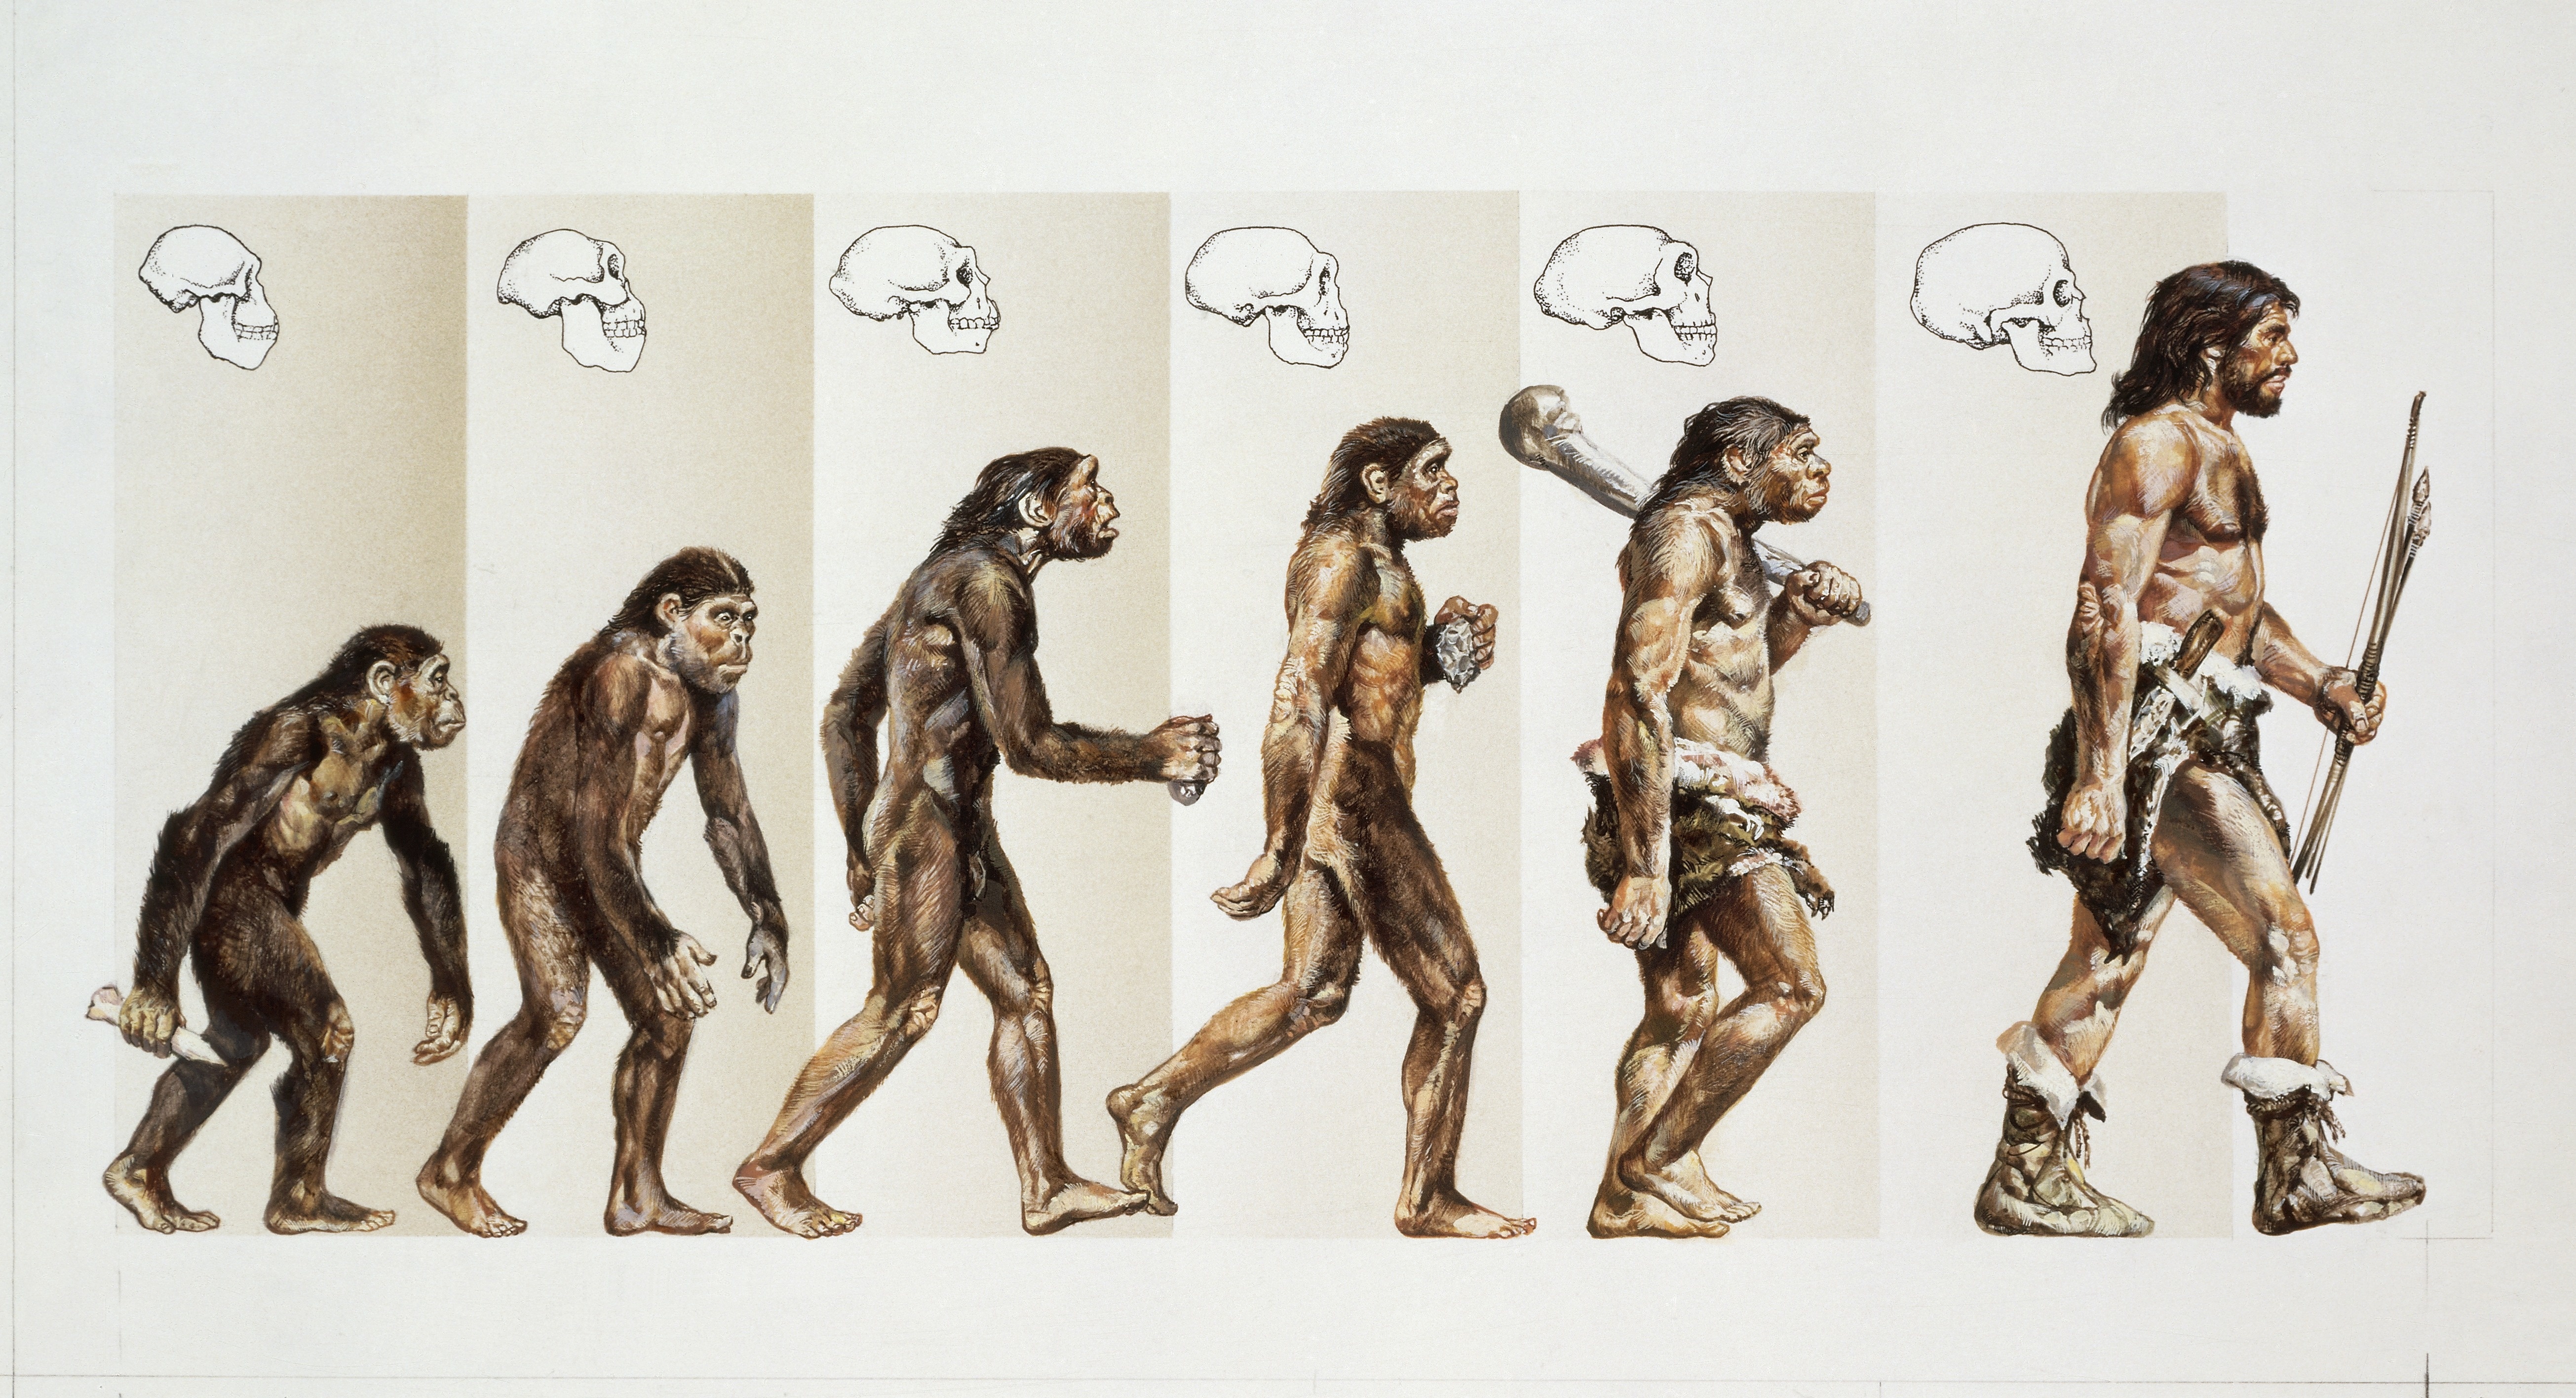 Mensch ist mensch. Хомо сапиенс Эволюция. Теория Дарвина о эволюции человека. Неандерталец и хомо сапиенс.